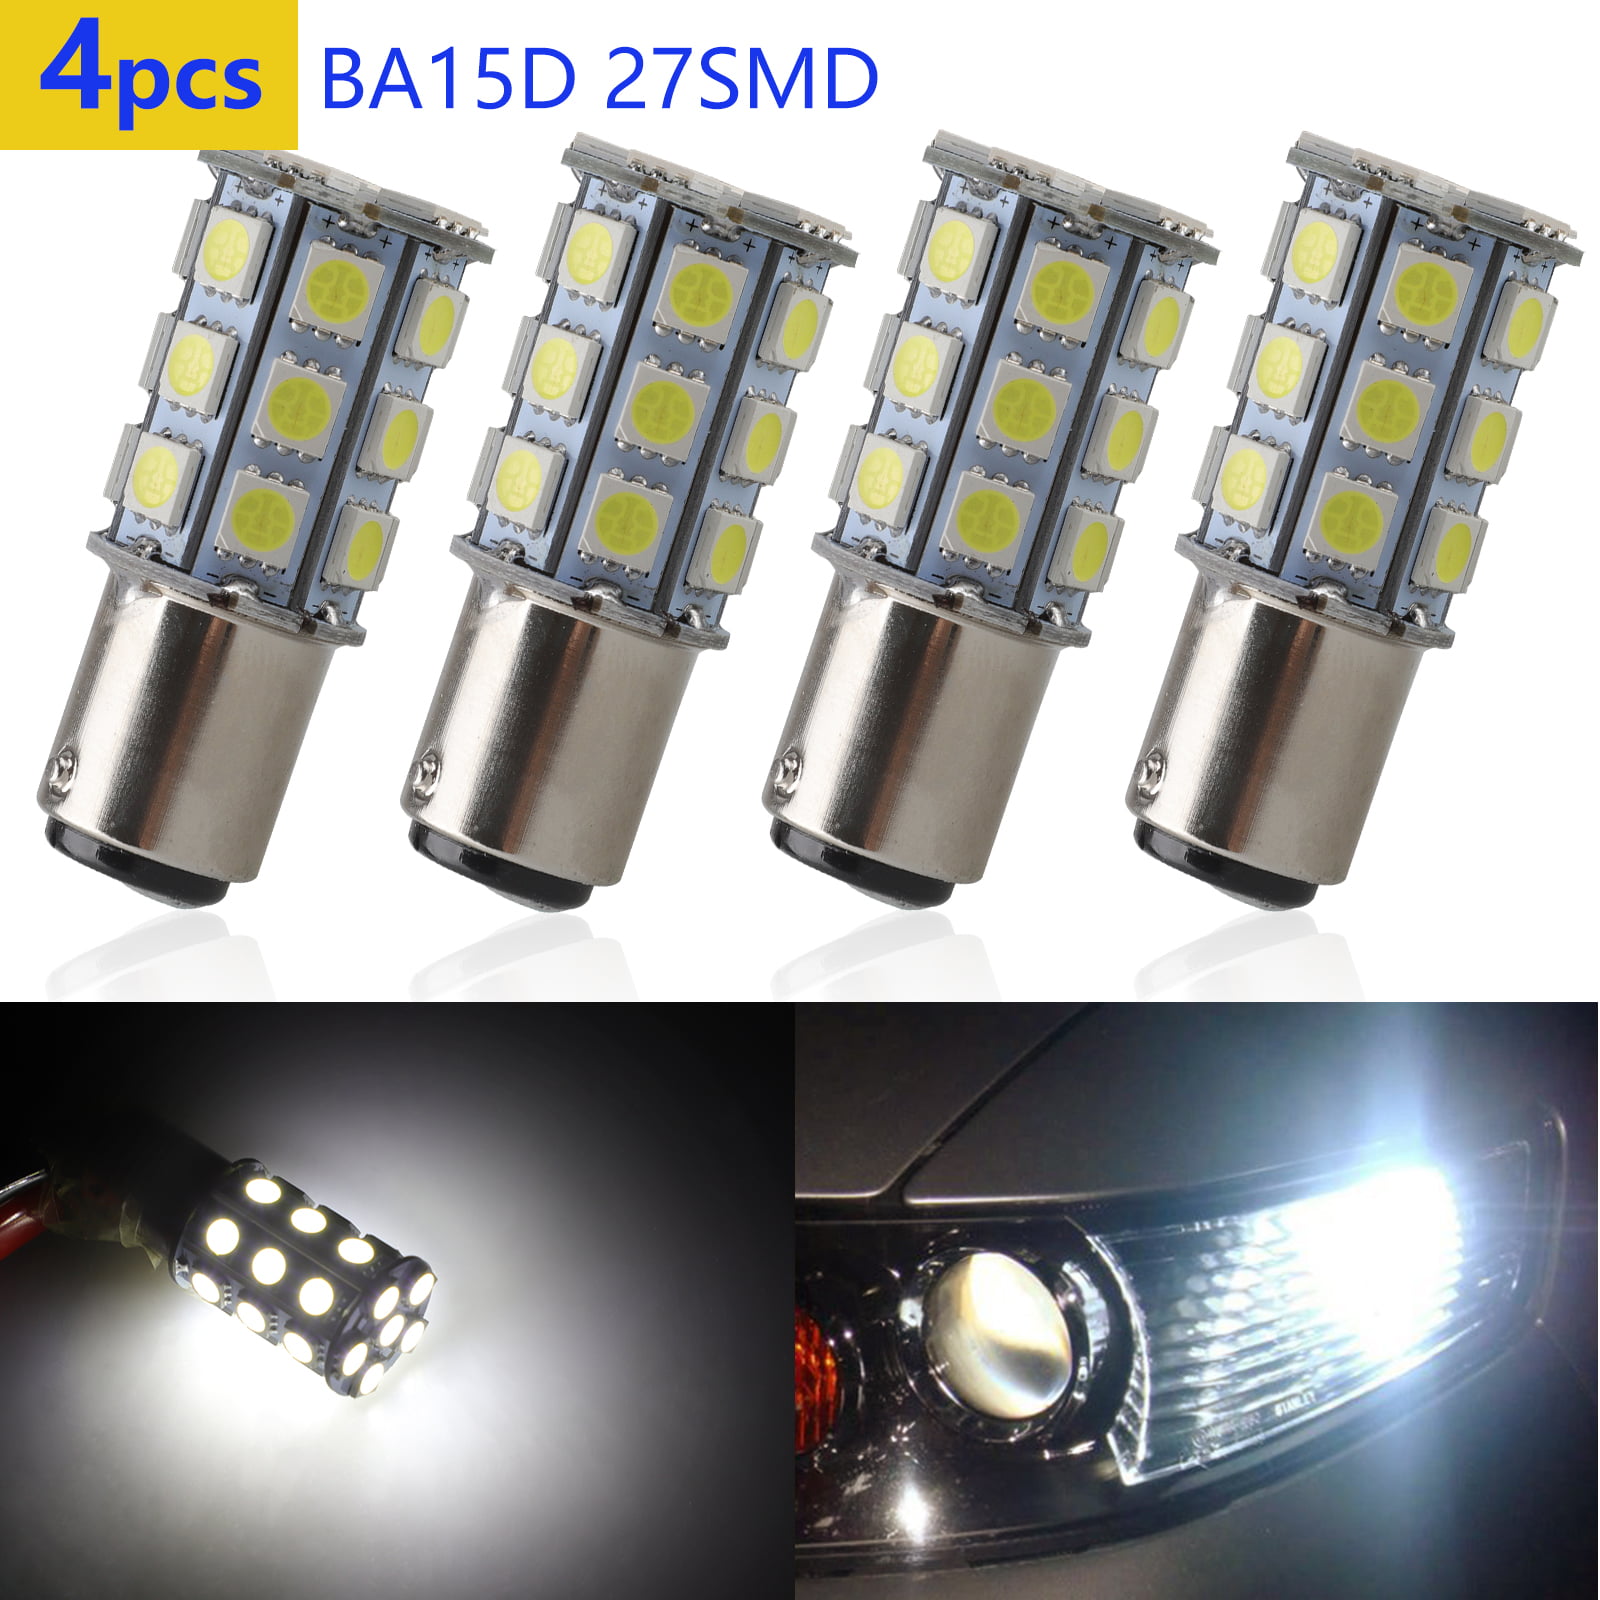 1-10pcs BA15D 1142 1178 AC/DC12V White/Warm 2W-5W 5050 SMD LED Light Bulb Lamp 